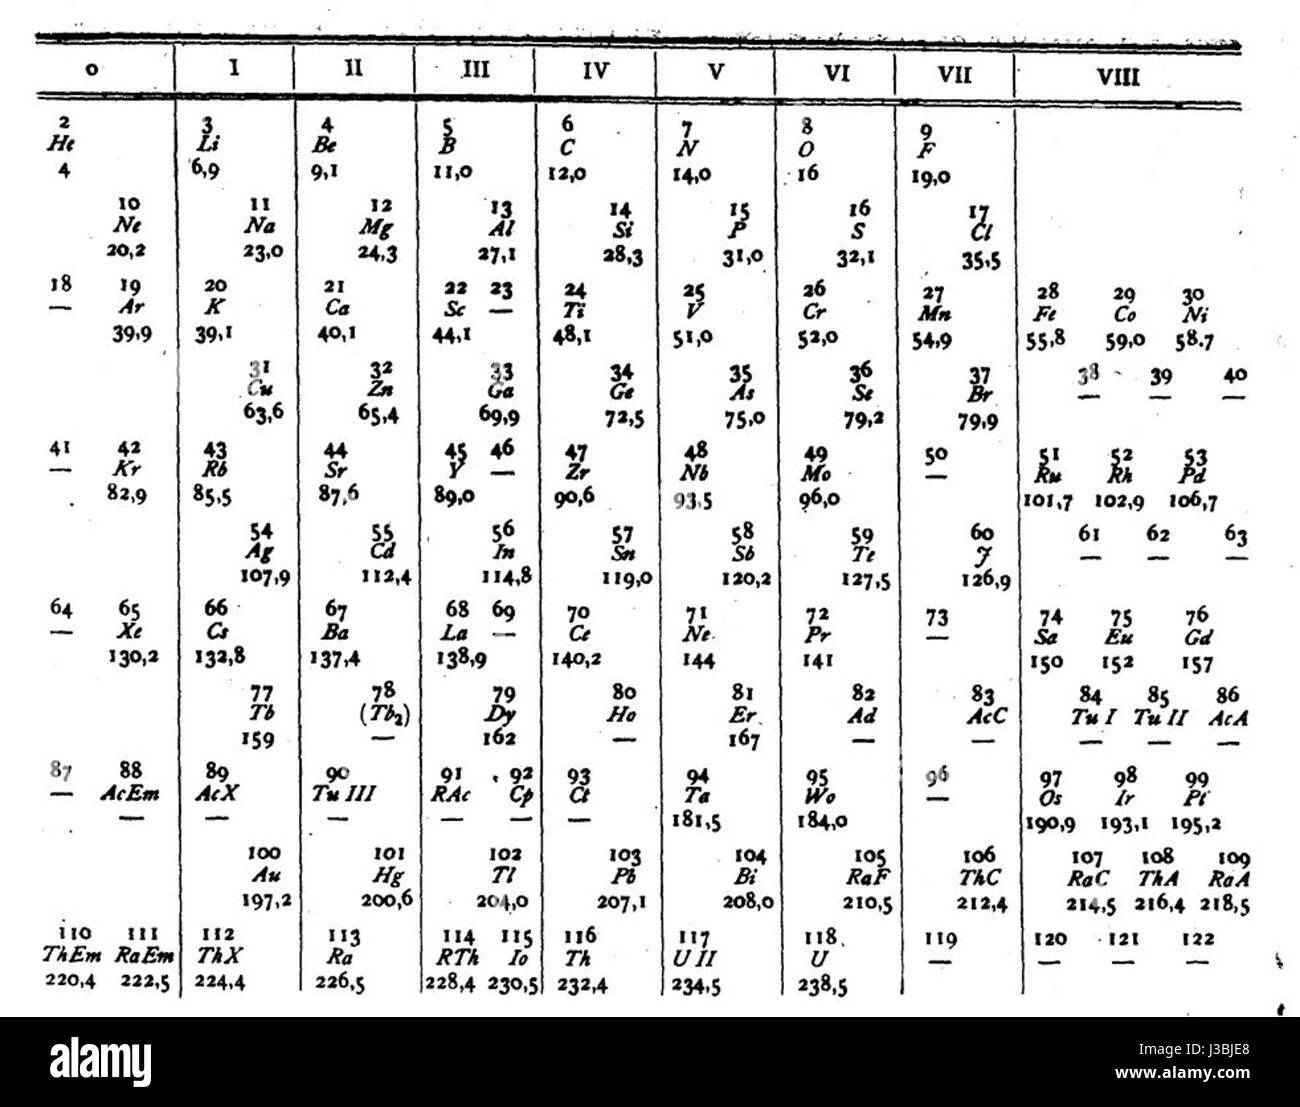 Extended periodic table van den Broek Stock Photo